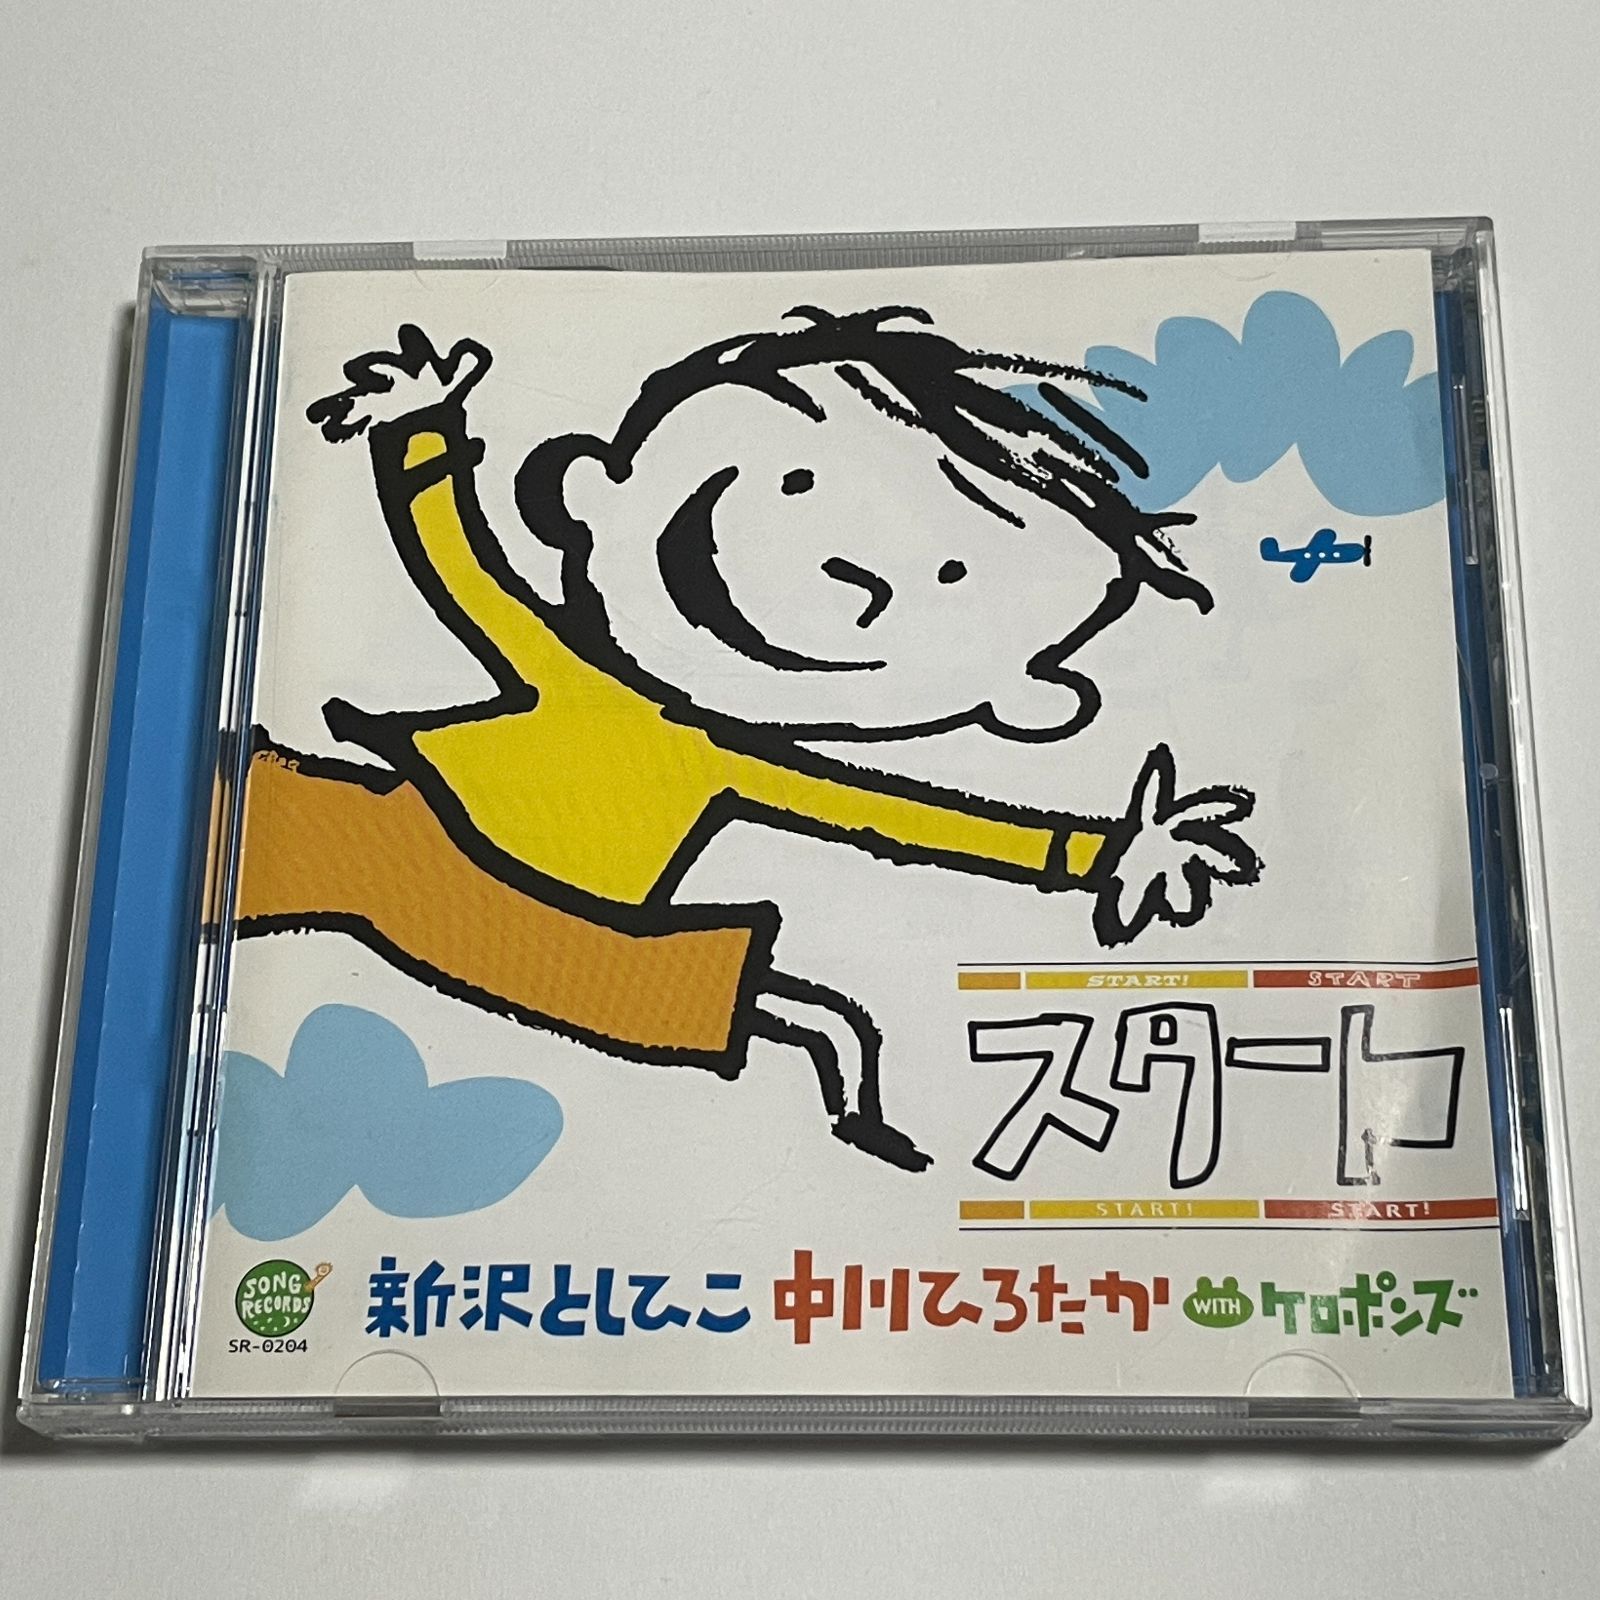 CD 新沢としひこ・中川ひろたか with ケロポンズ『スタート